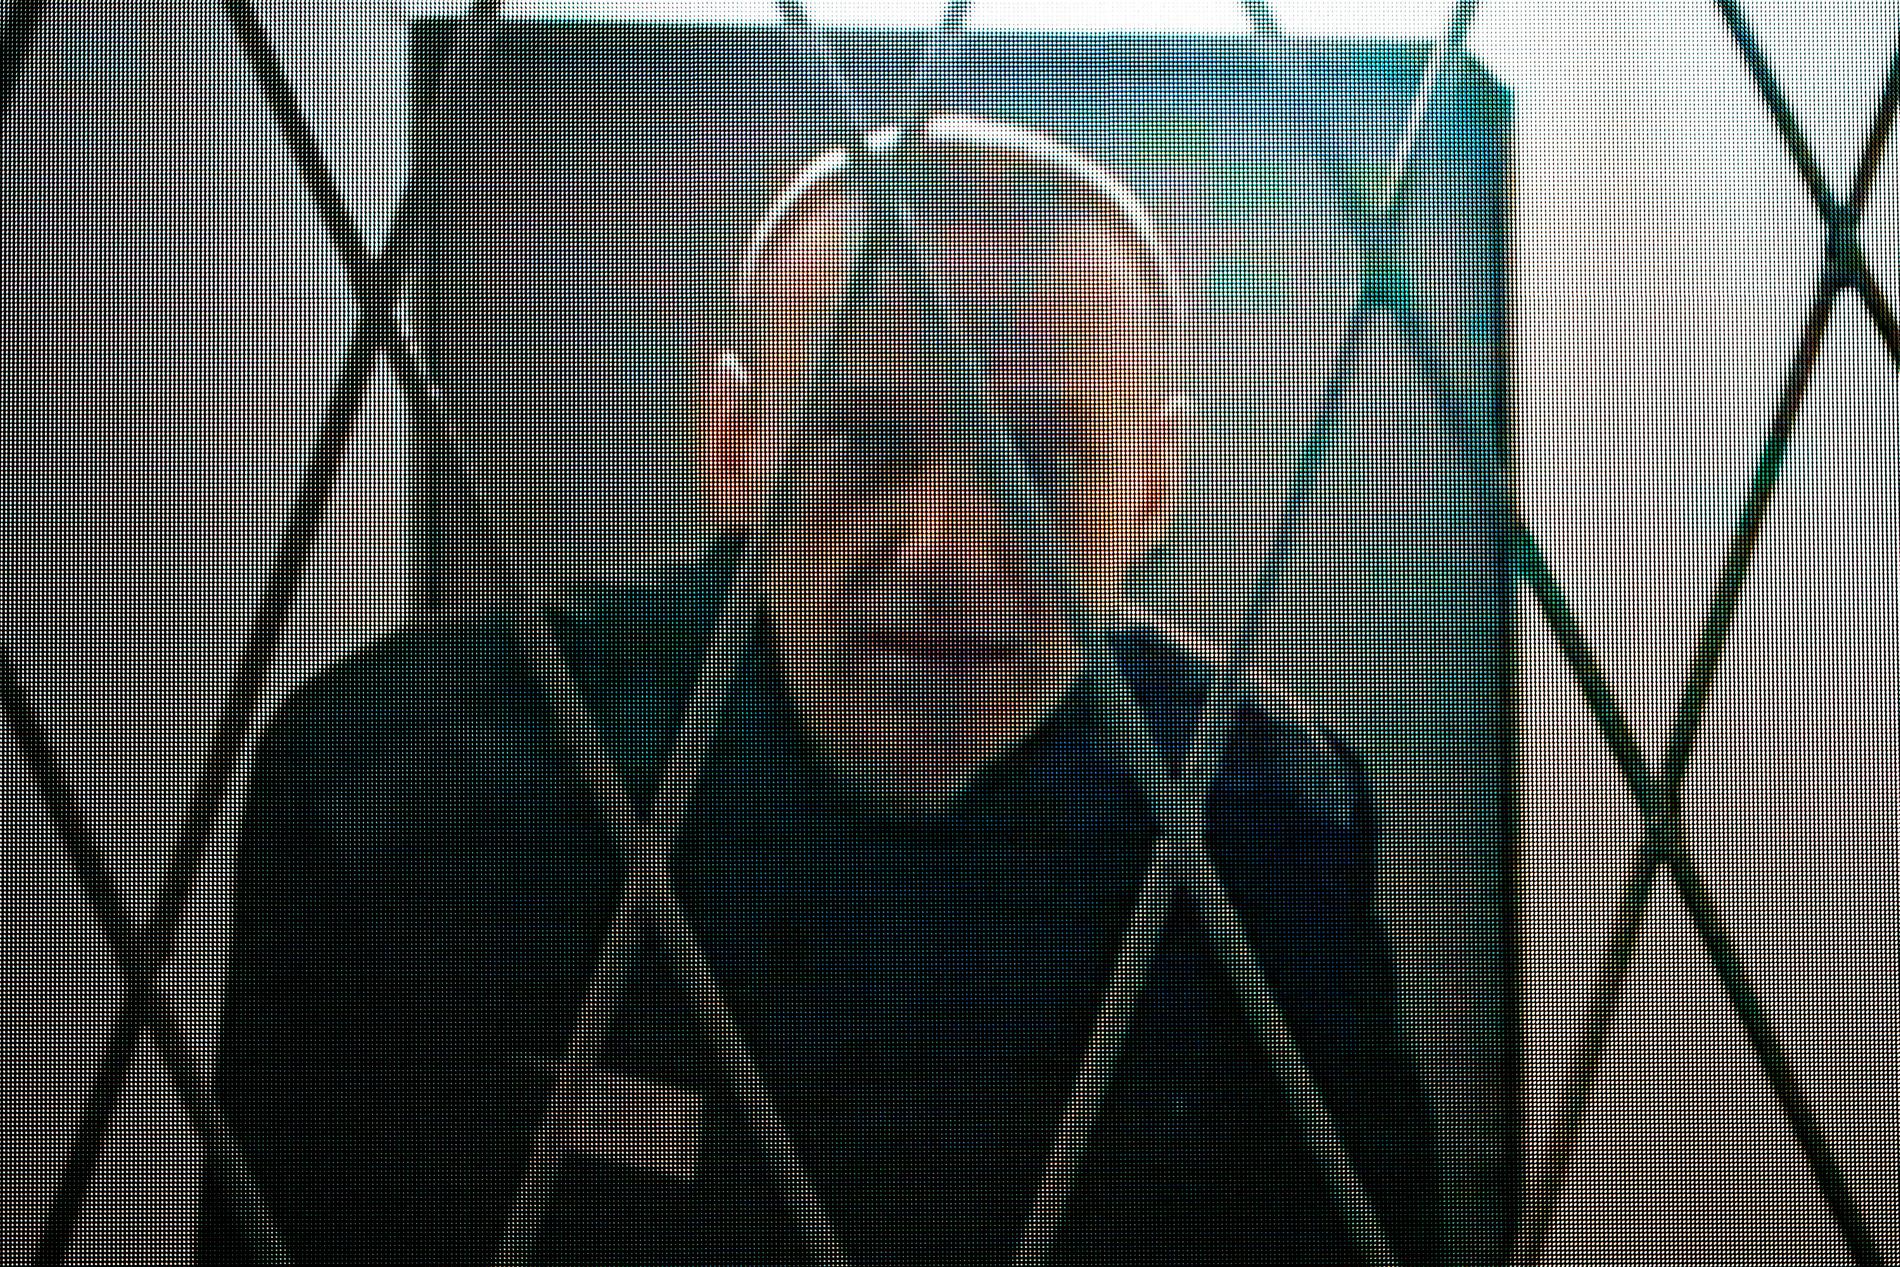 Aleksej Navalnyj bakom galler.